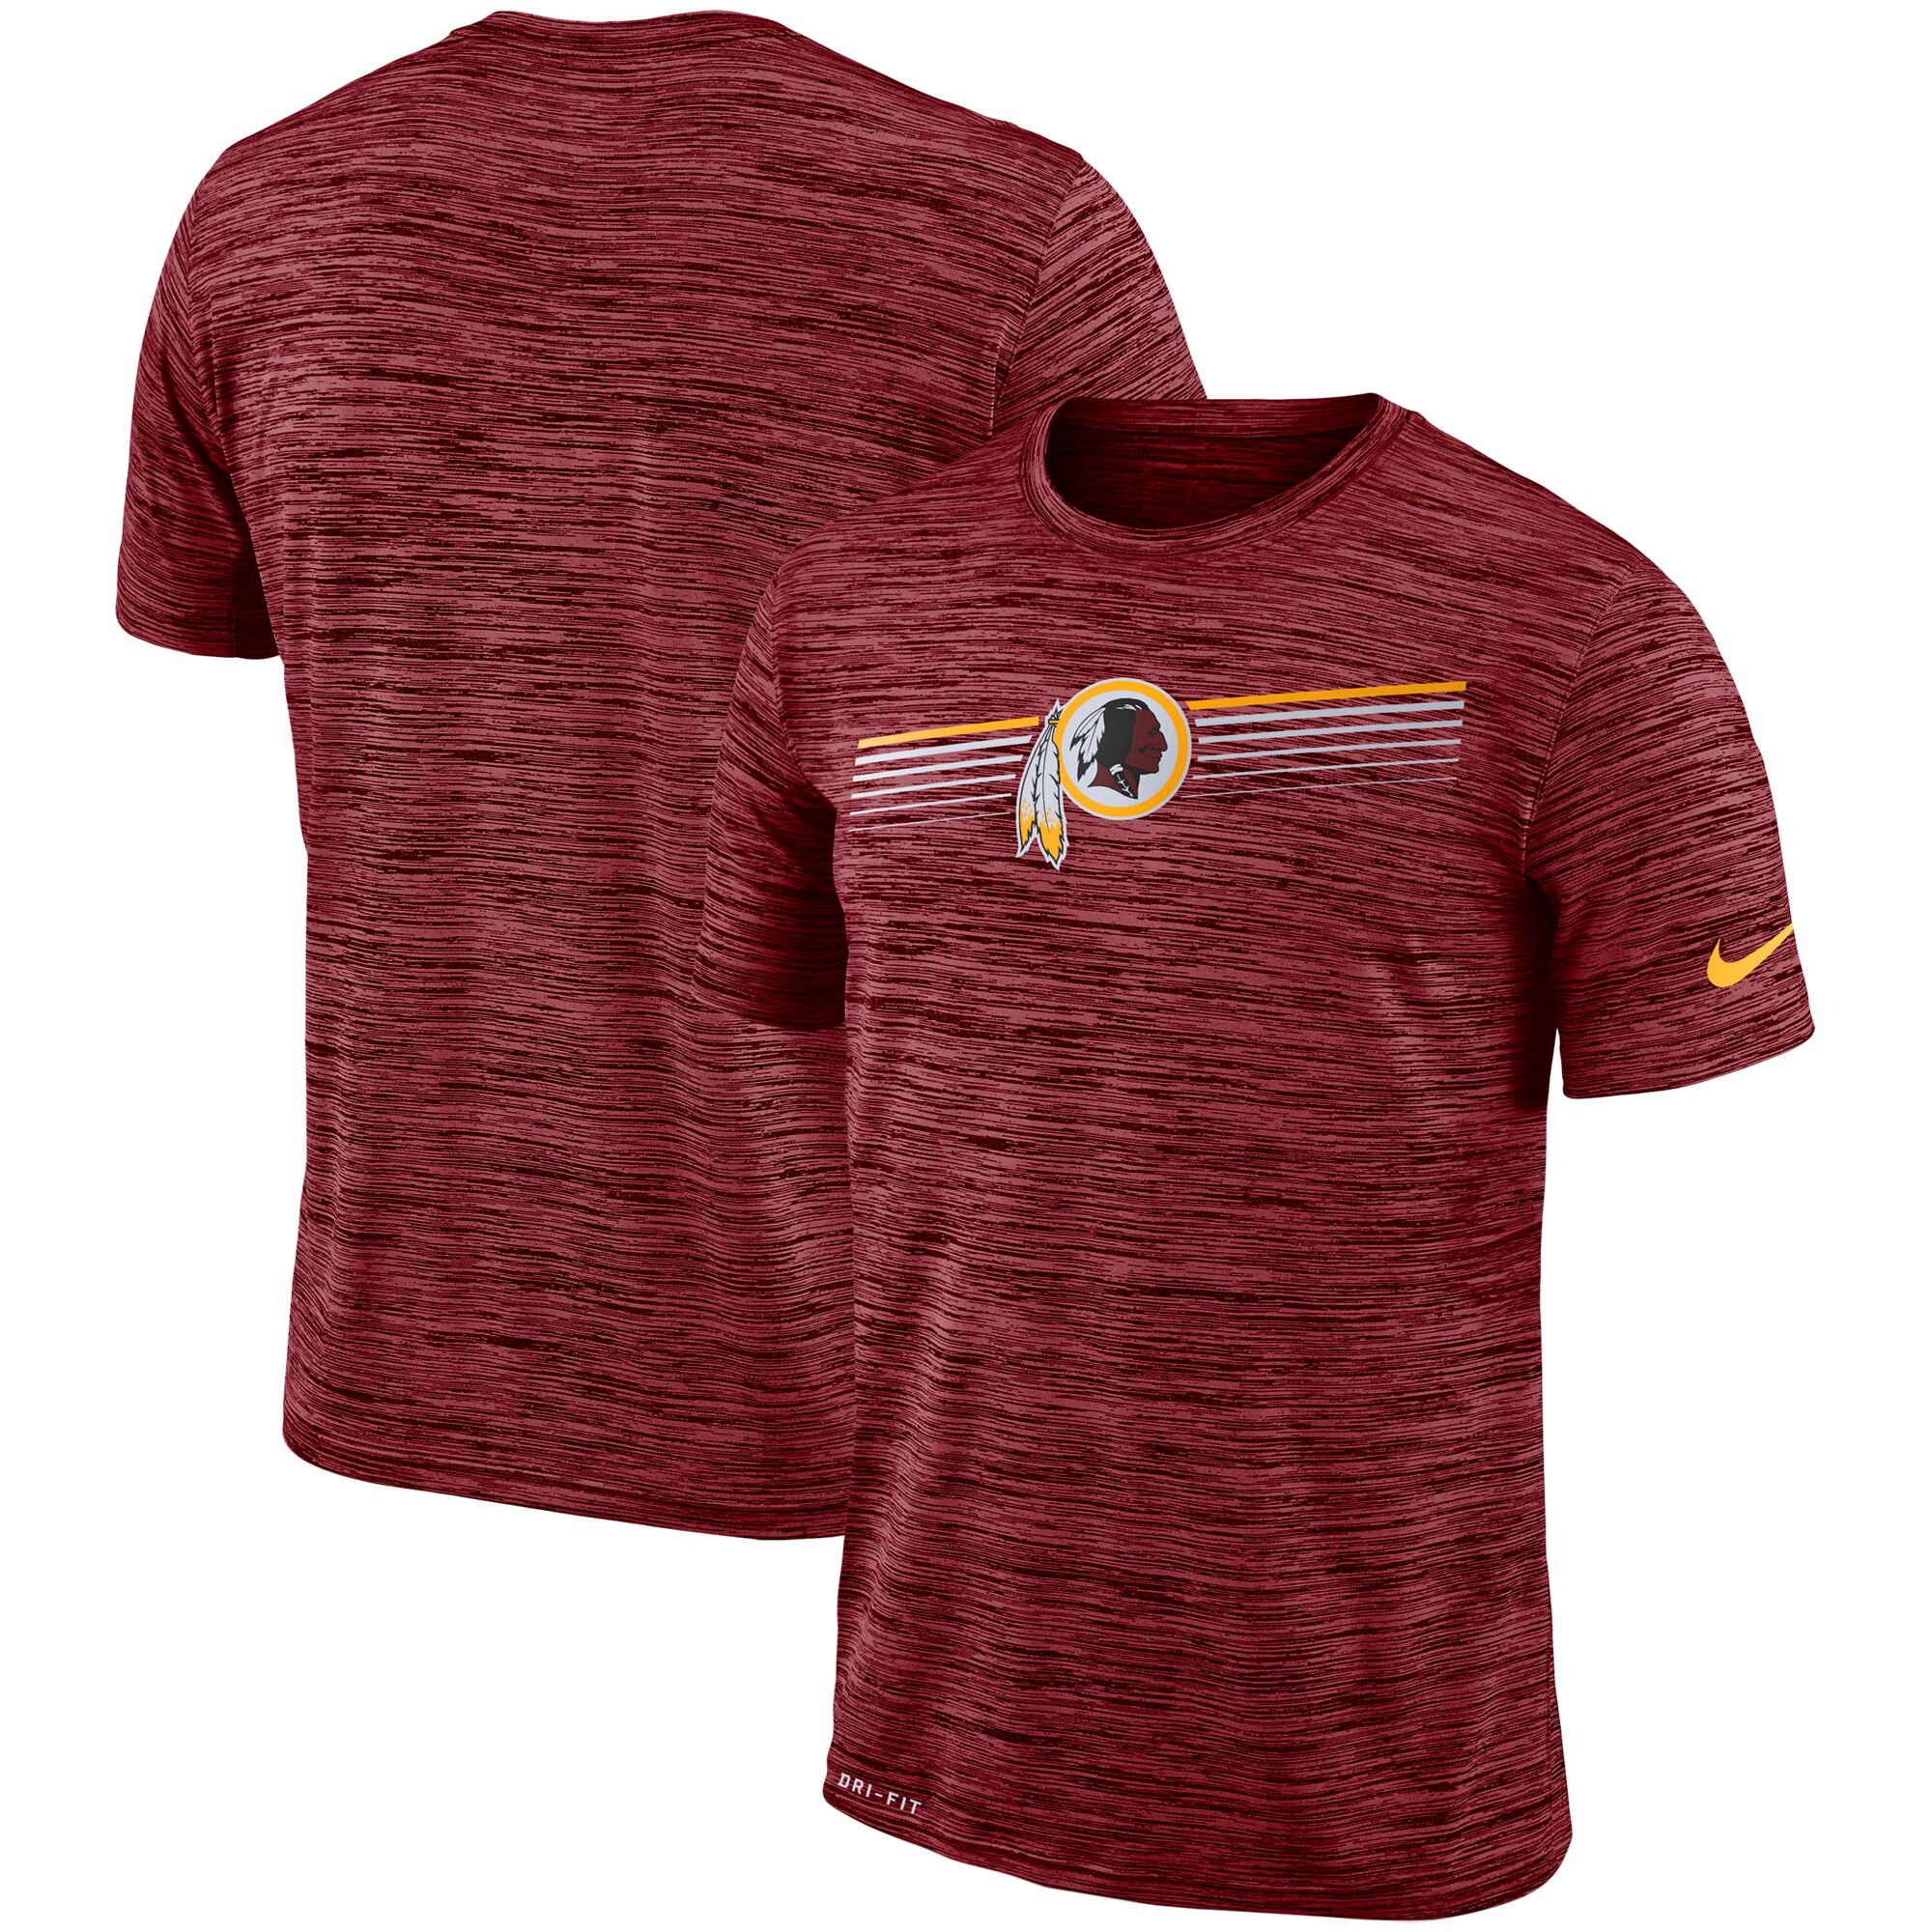 Washington Redskins Nike Sideline Velocity Performance T-Shirt Heathered Burgundy